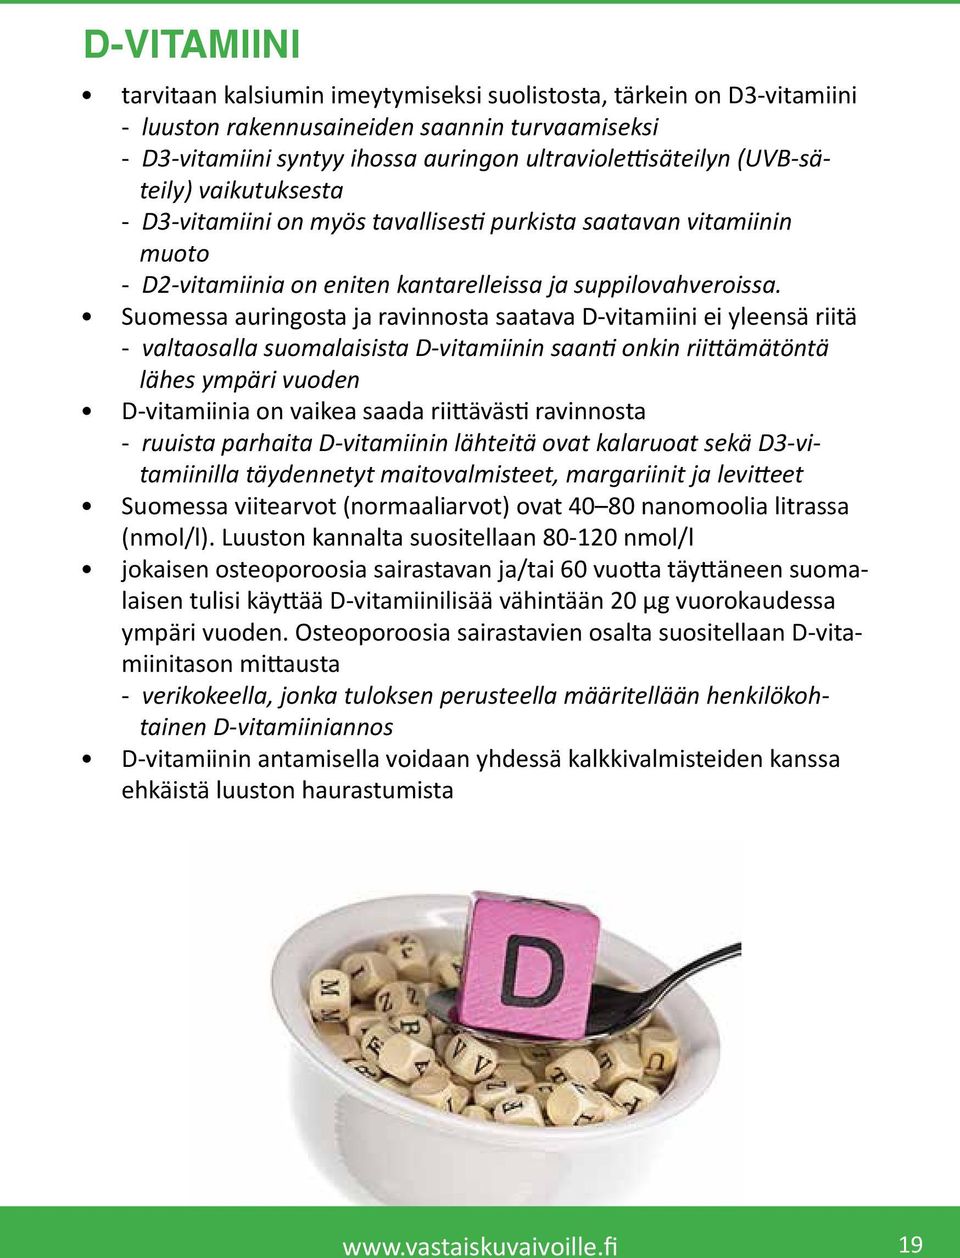 Suomessa auringosta ja ravinnosta saatava D-vitamiini ei yleensä riitä - valtaosalla suomalaisista D-vitamiinin saanti onkin riittämätöntä lähes ympäri vuoden D-vitamiinia on vaikea saada riittävästi